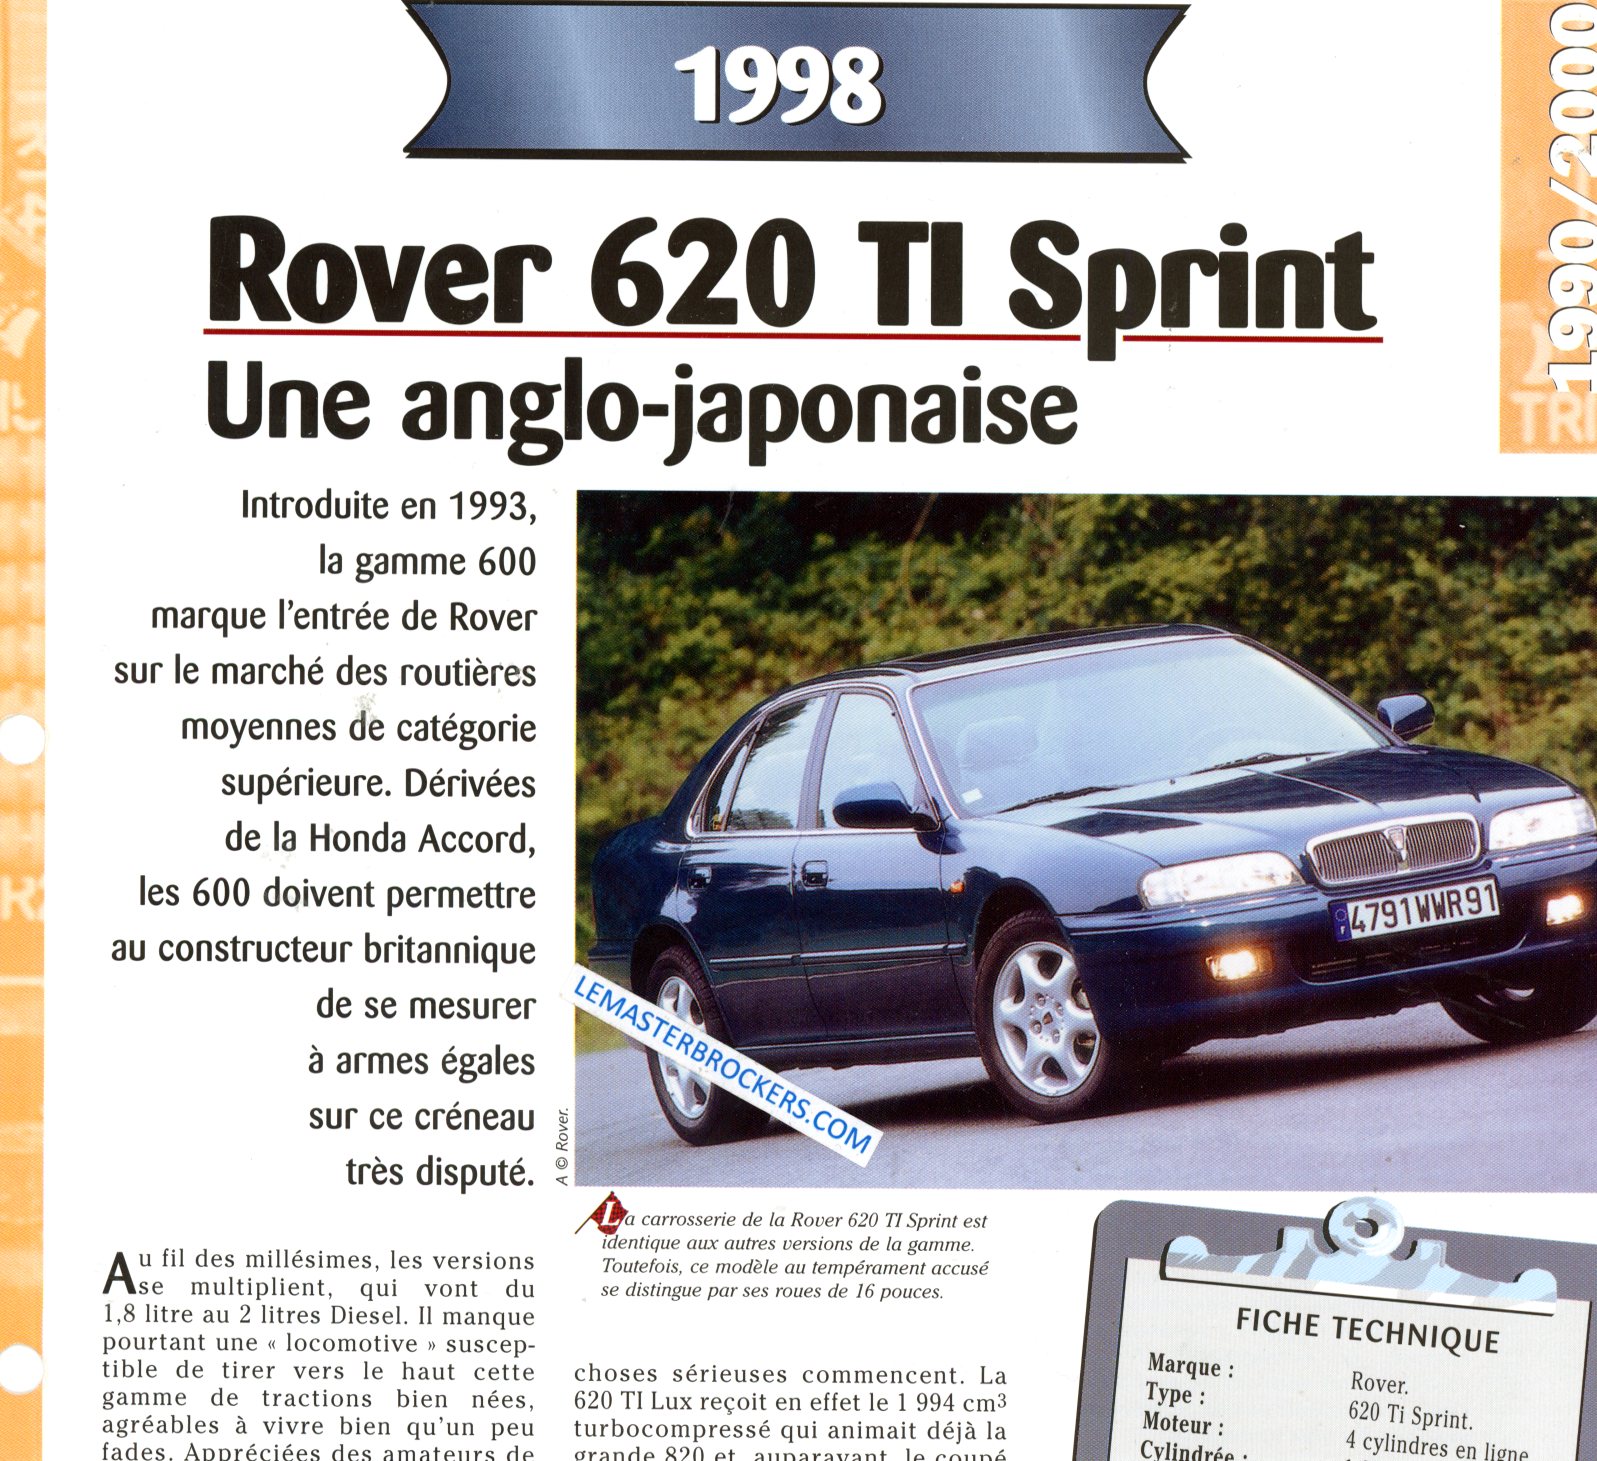 ROVER 620 TI SPRINT 1998 FICHE TECHNIQUE